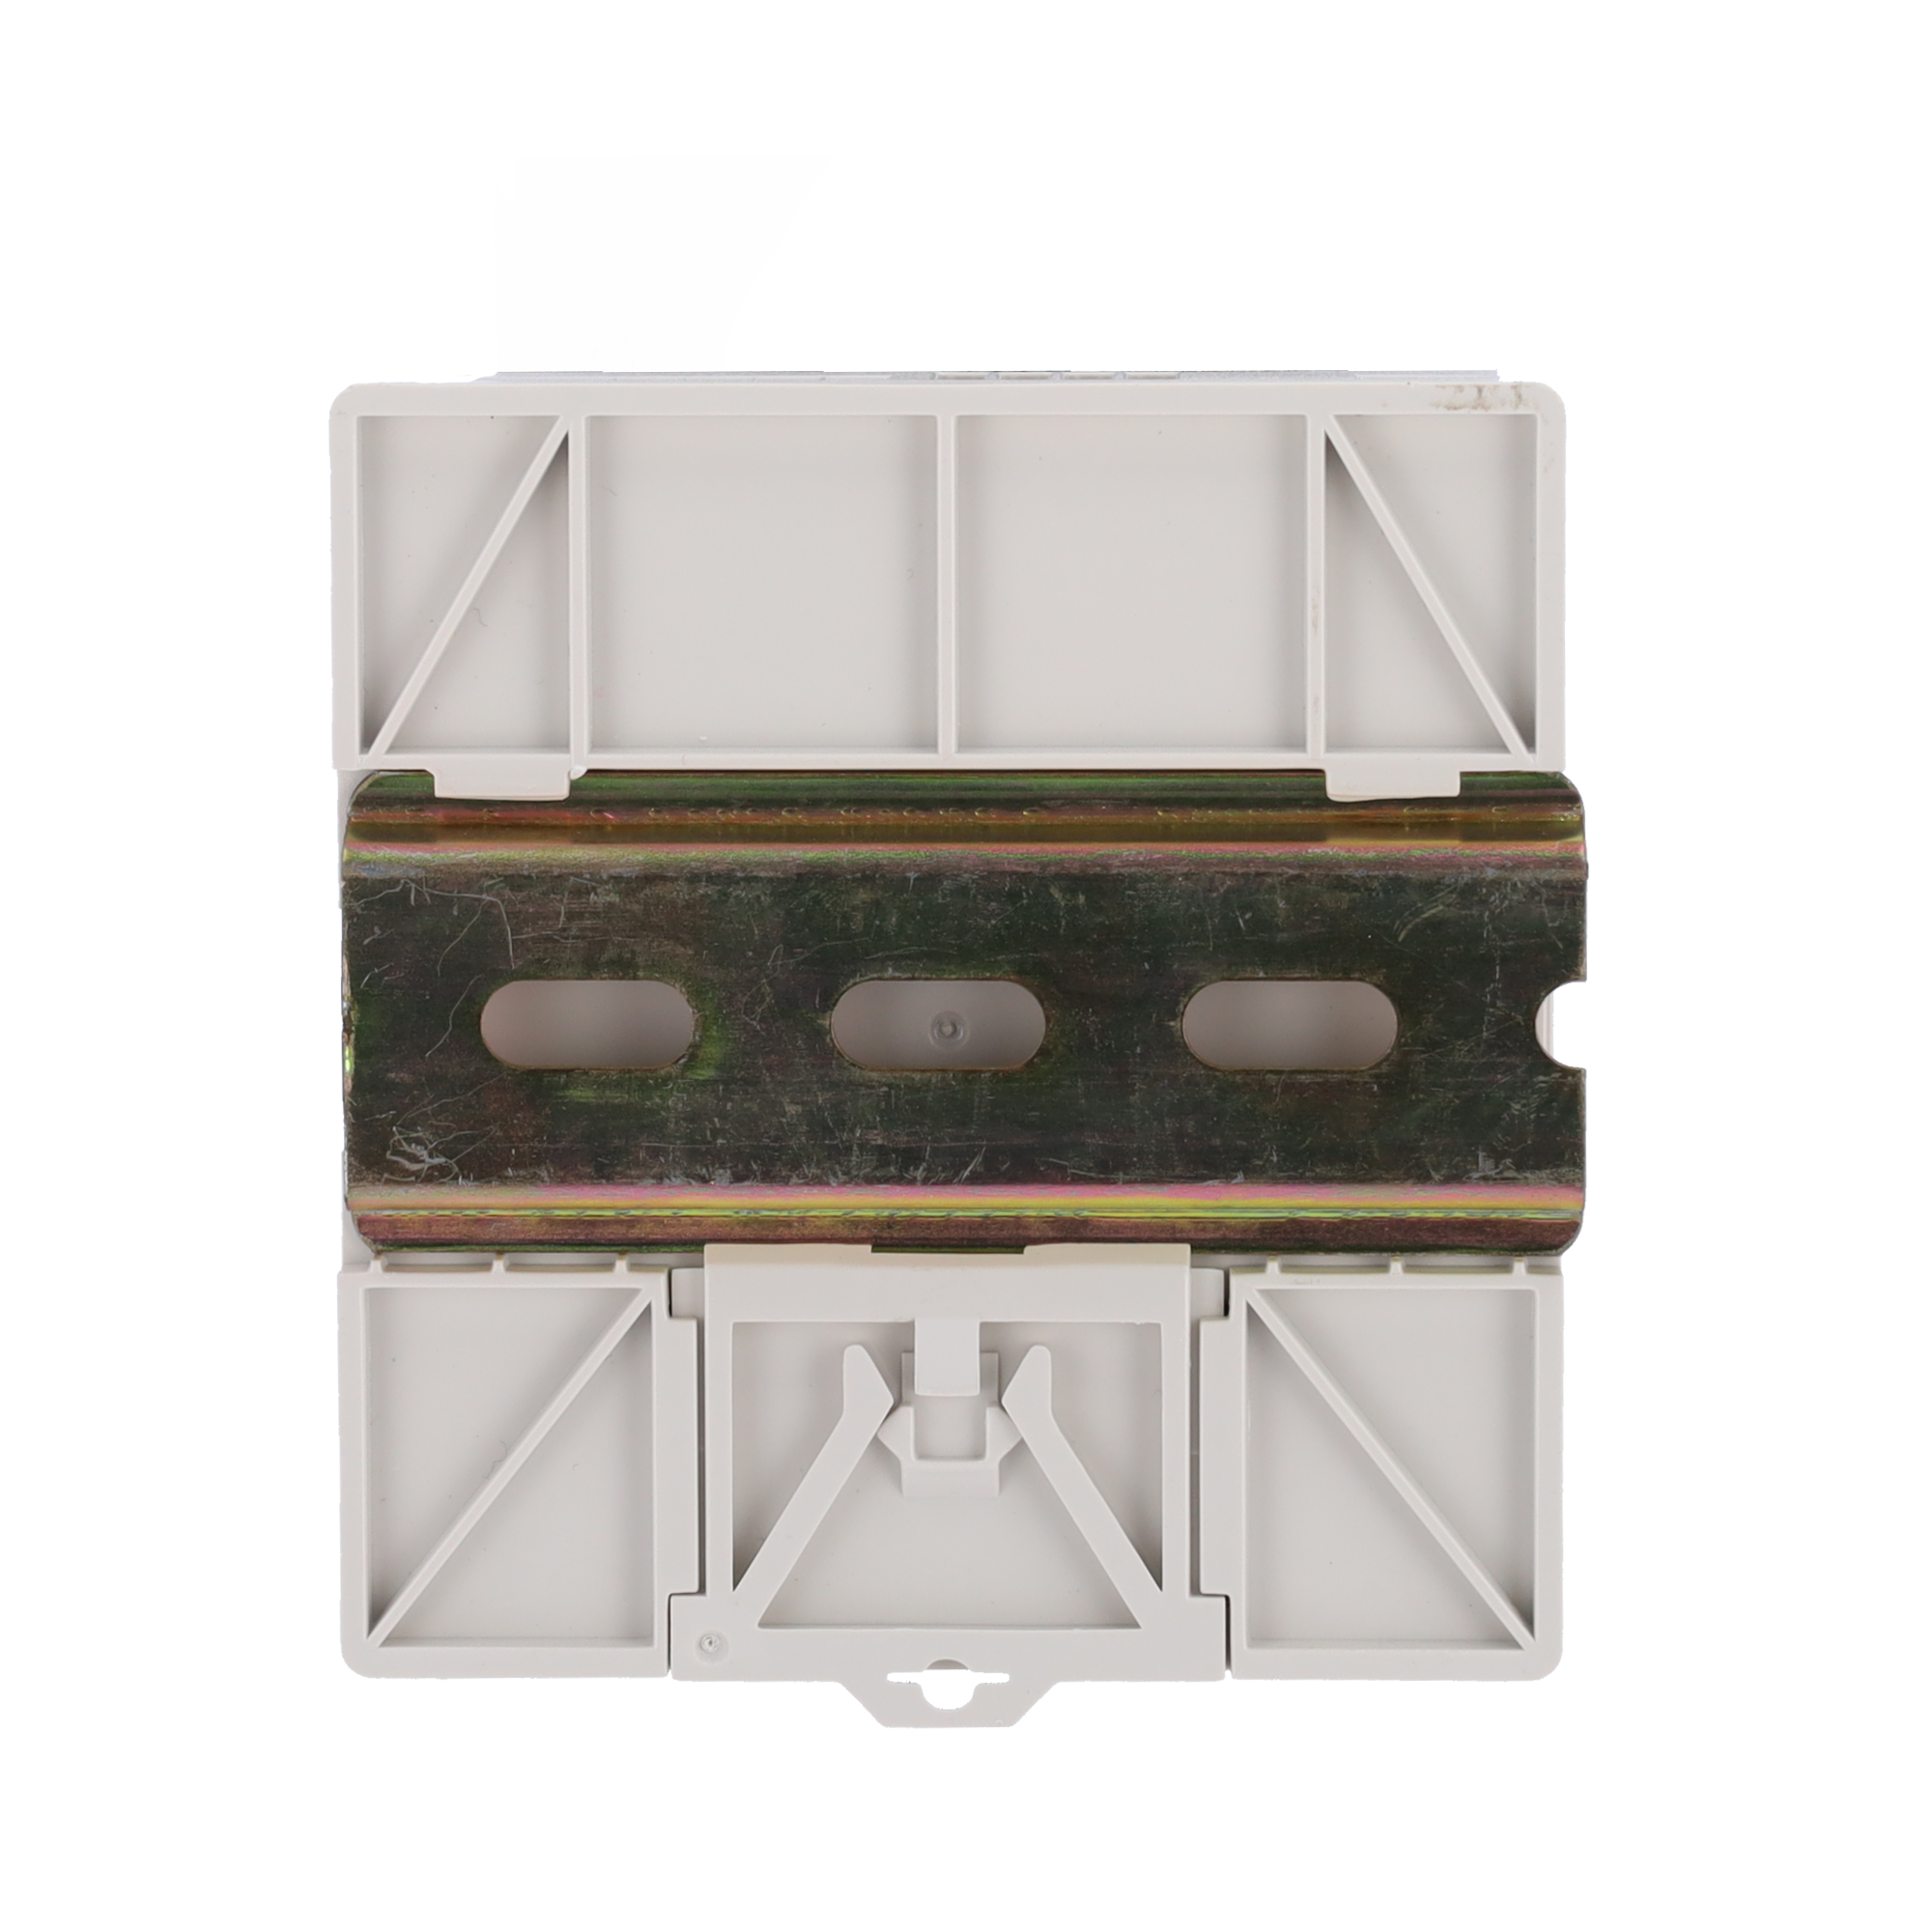 Alimentatore  - uscita DC 24 V 1.5 A / 36 W - Tensione in ingresso AC 100V ~ 240V 50Hz-60Hz -  97 (Fo) x 55 (Al) x 88 (An) mm - Montaggio su guida DIN - Protezione: Sovraccarico/Sovratensione/Cortocircuito